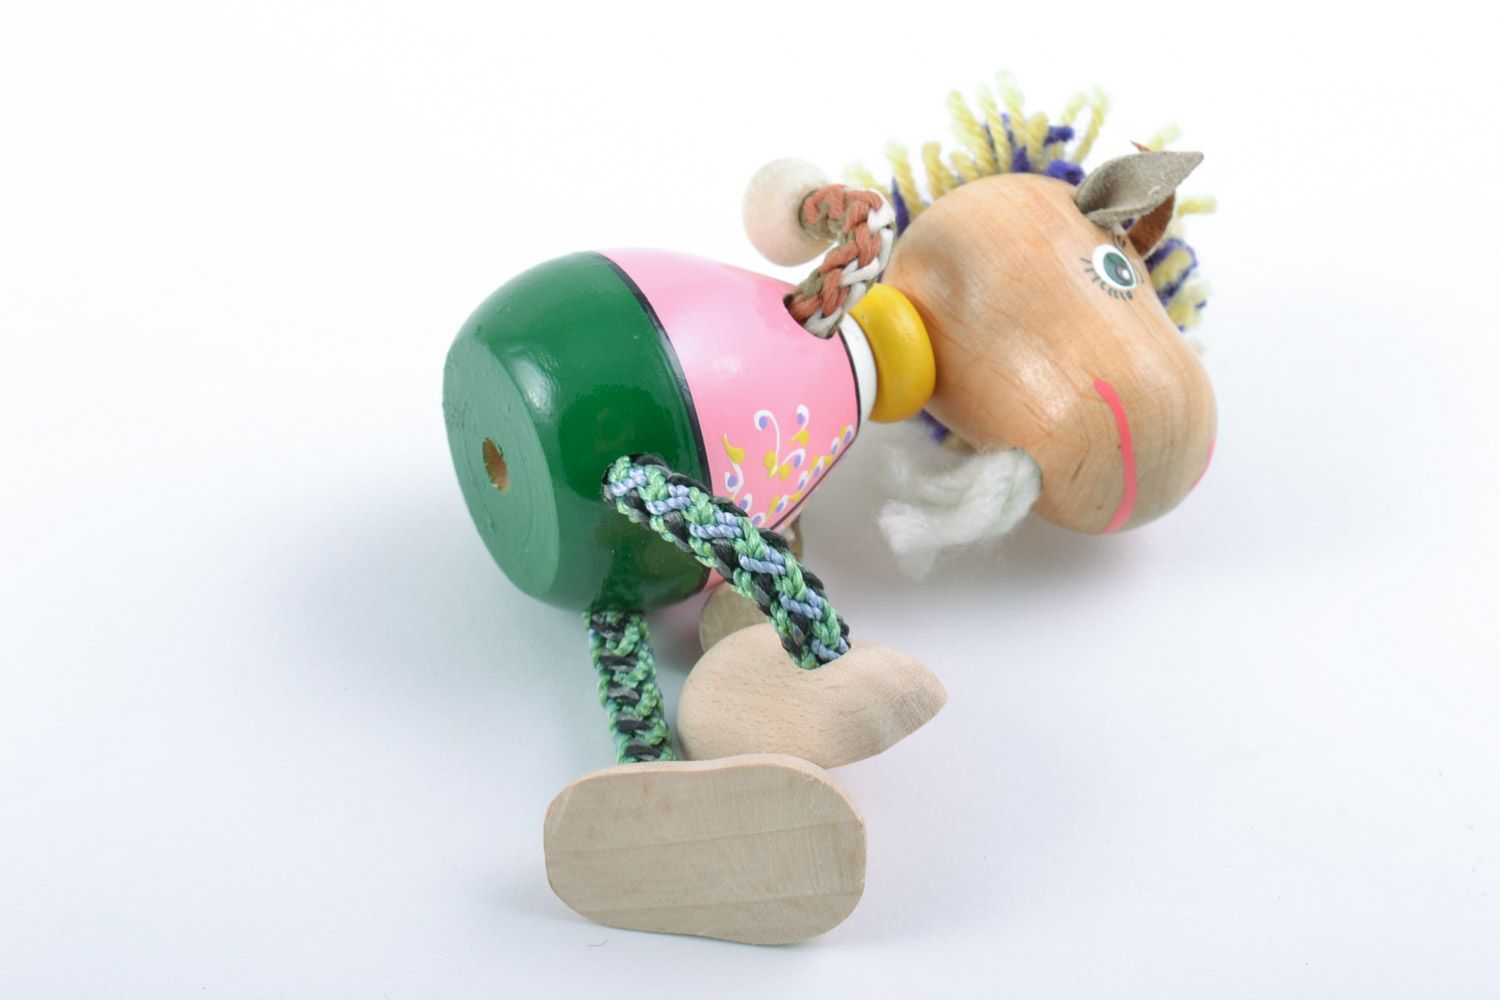 Деревянная игрушка в виде козлика ручной работы расписанная эко красками фото 5